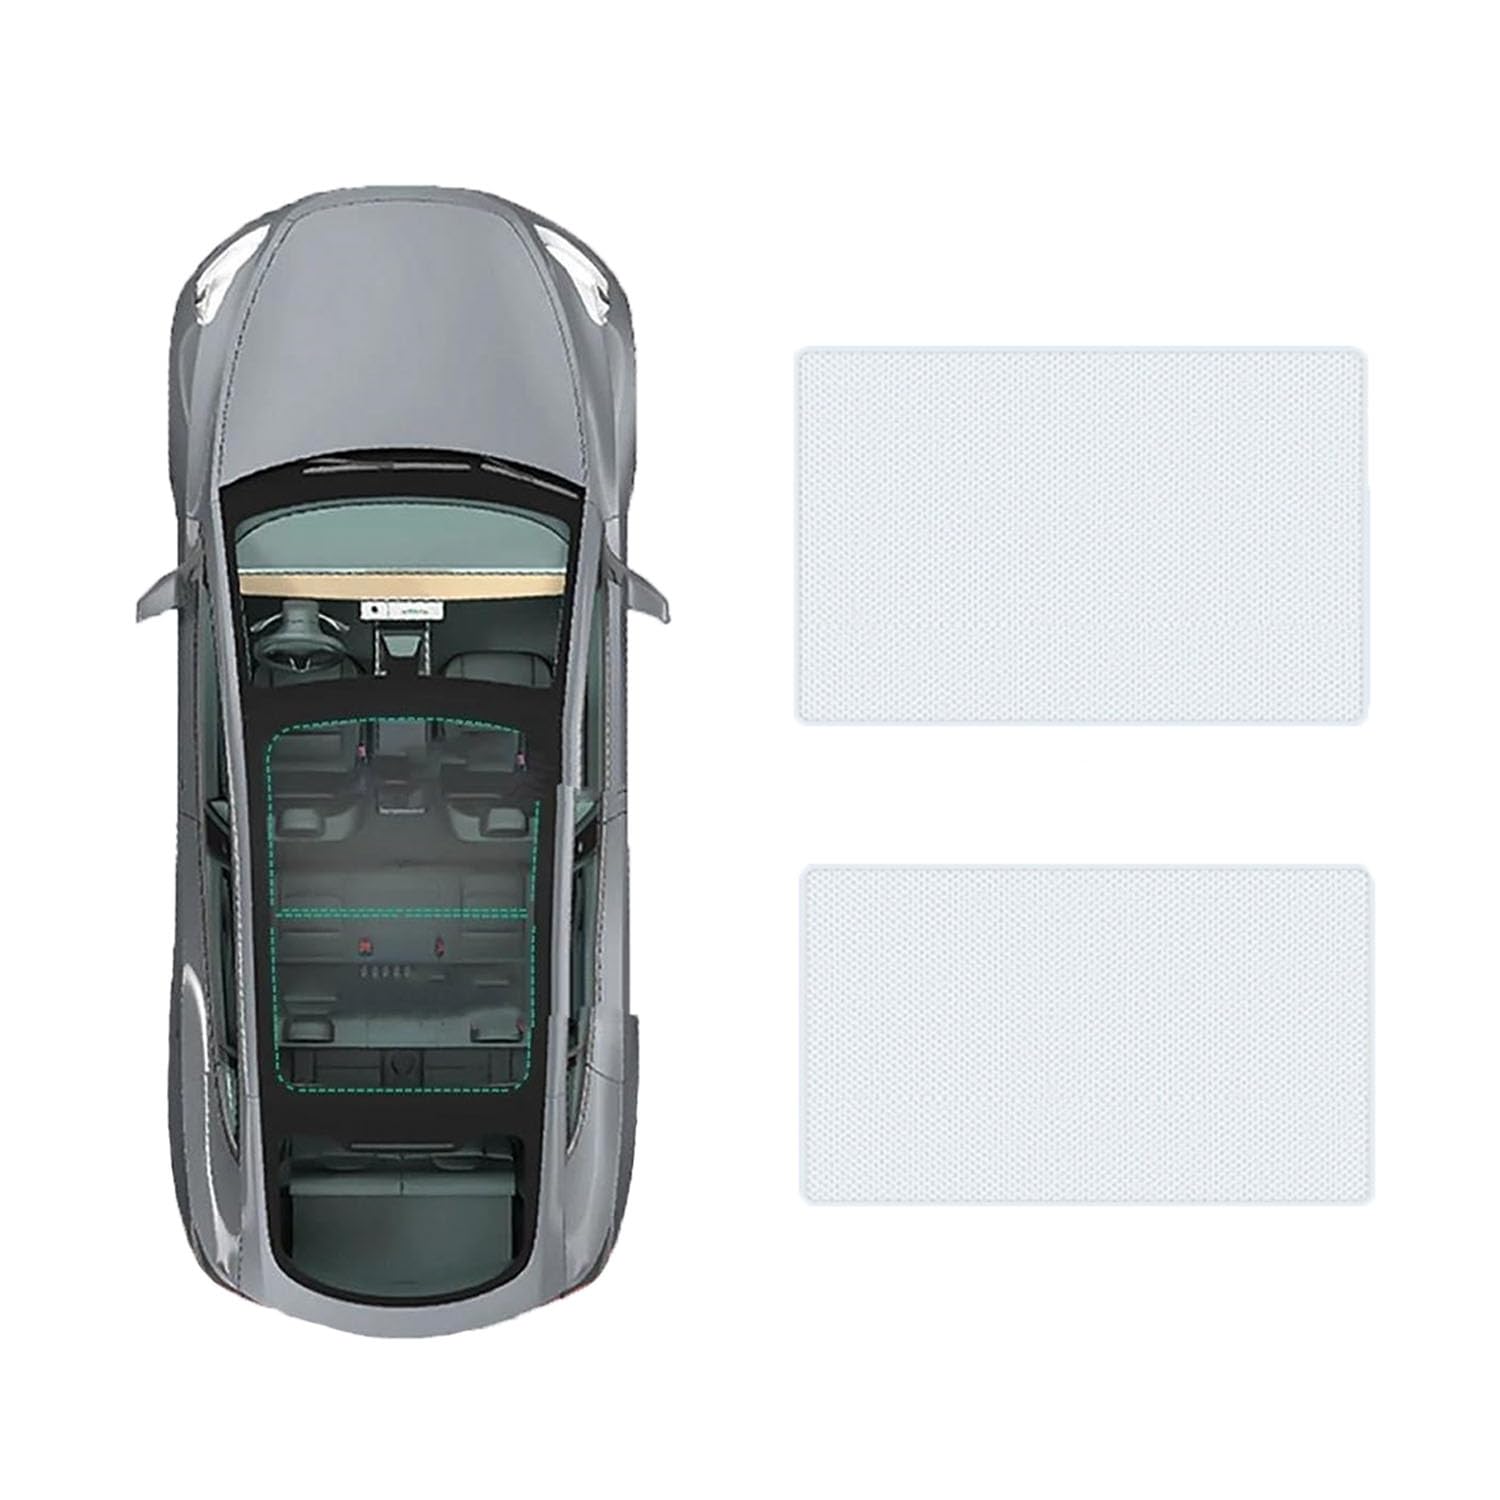 Auto Schiebedach Sonnenschirm Vorhang Für Hyundai Santa Fe 2013-,UV-Schutz Schattierung vorne Heckscheibe Sonnenschutz,A-Gray white regular Style von JiAQen